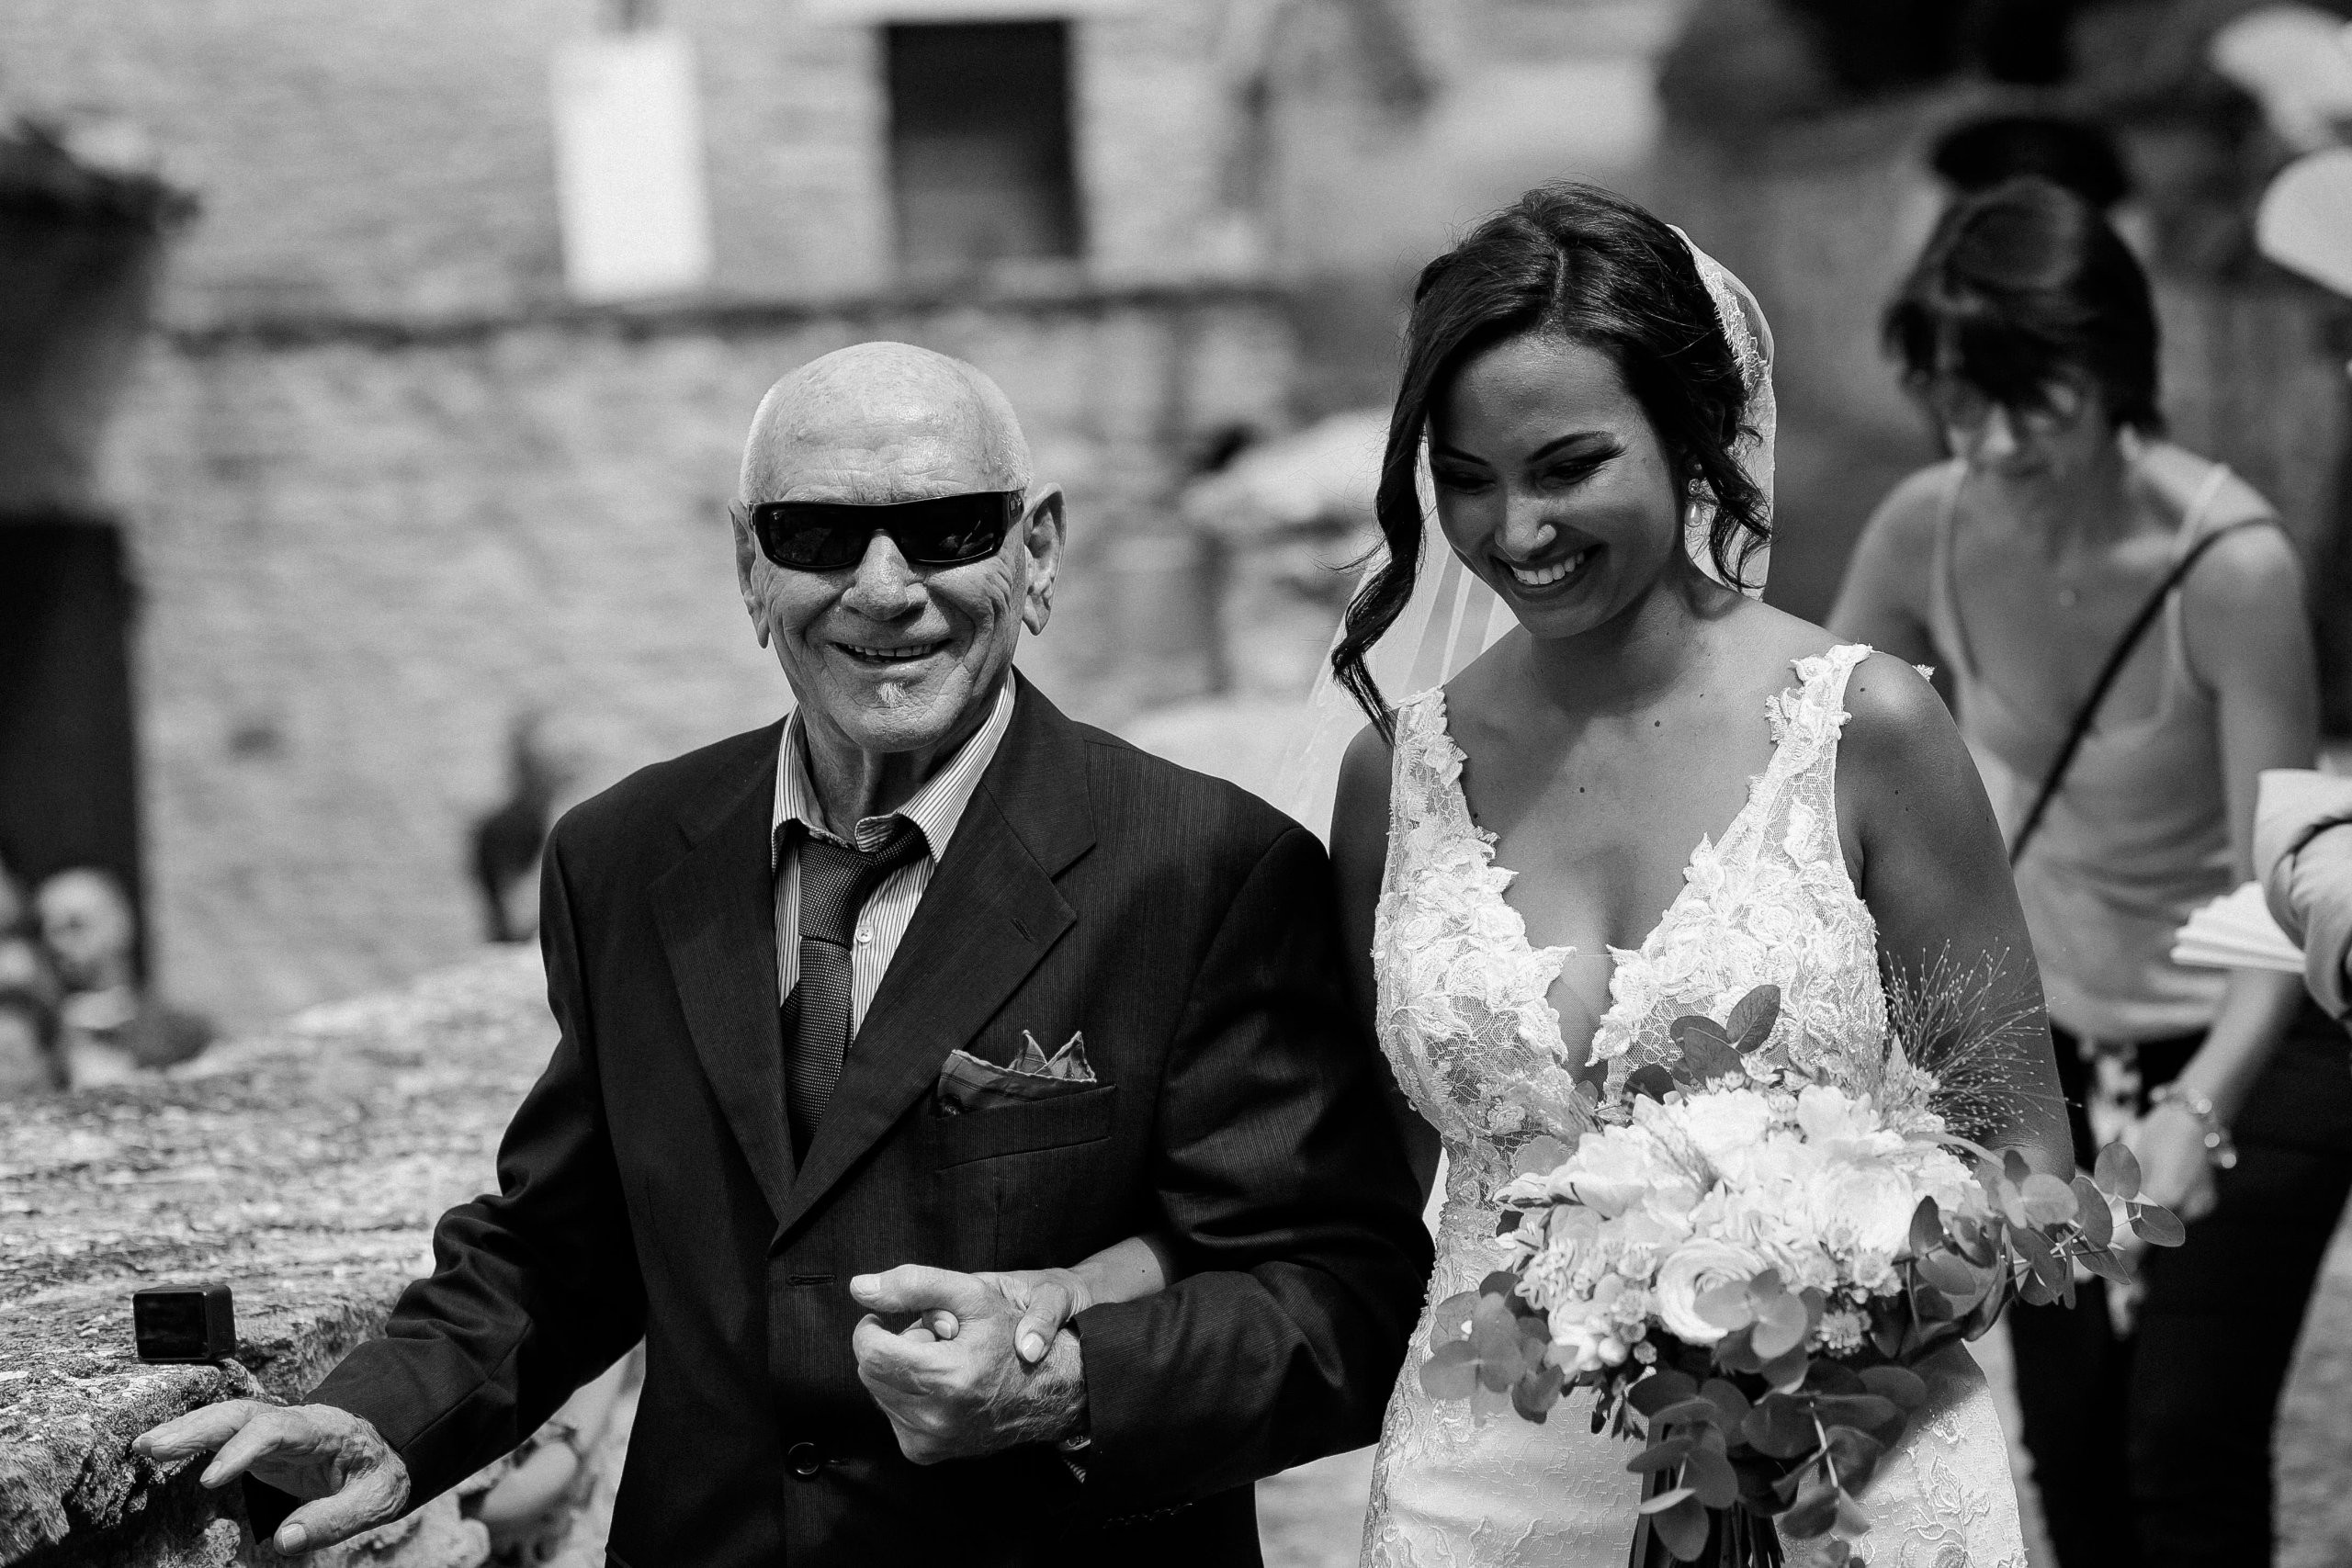 Aida + Tim | Hochzeitsfotografen am Bodensee Hochzeit - Pescara, Italien  - Hochzeitsfotografie von Aida und Tim